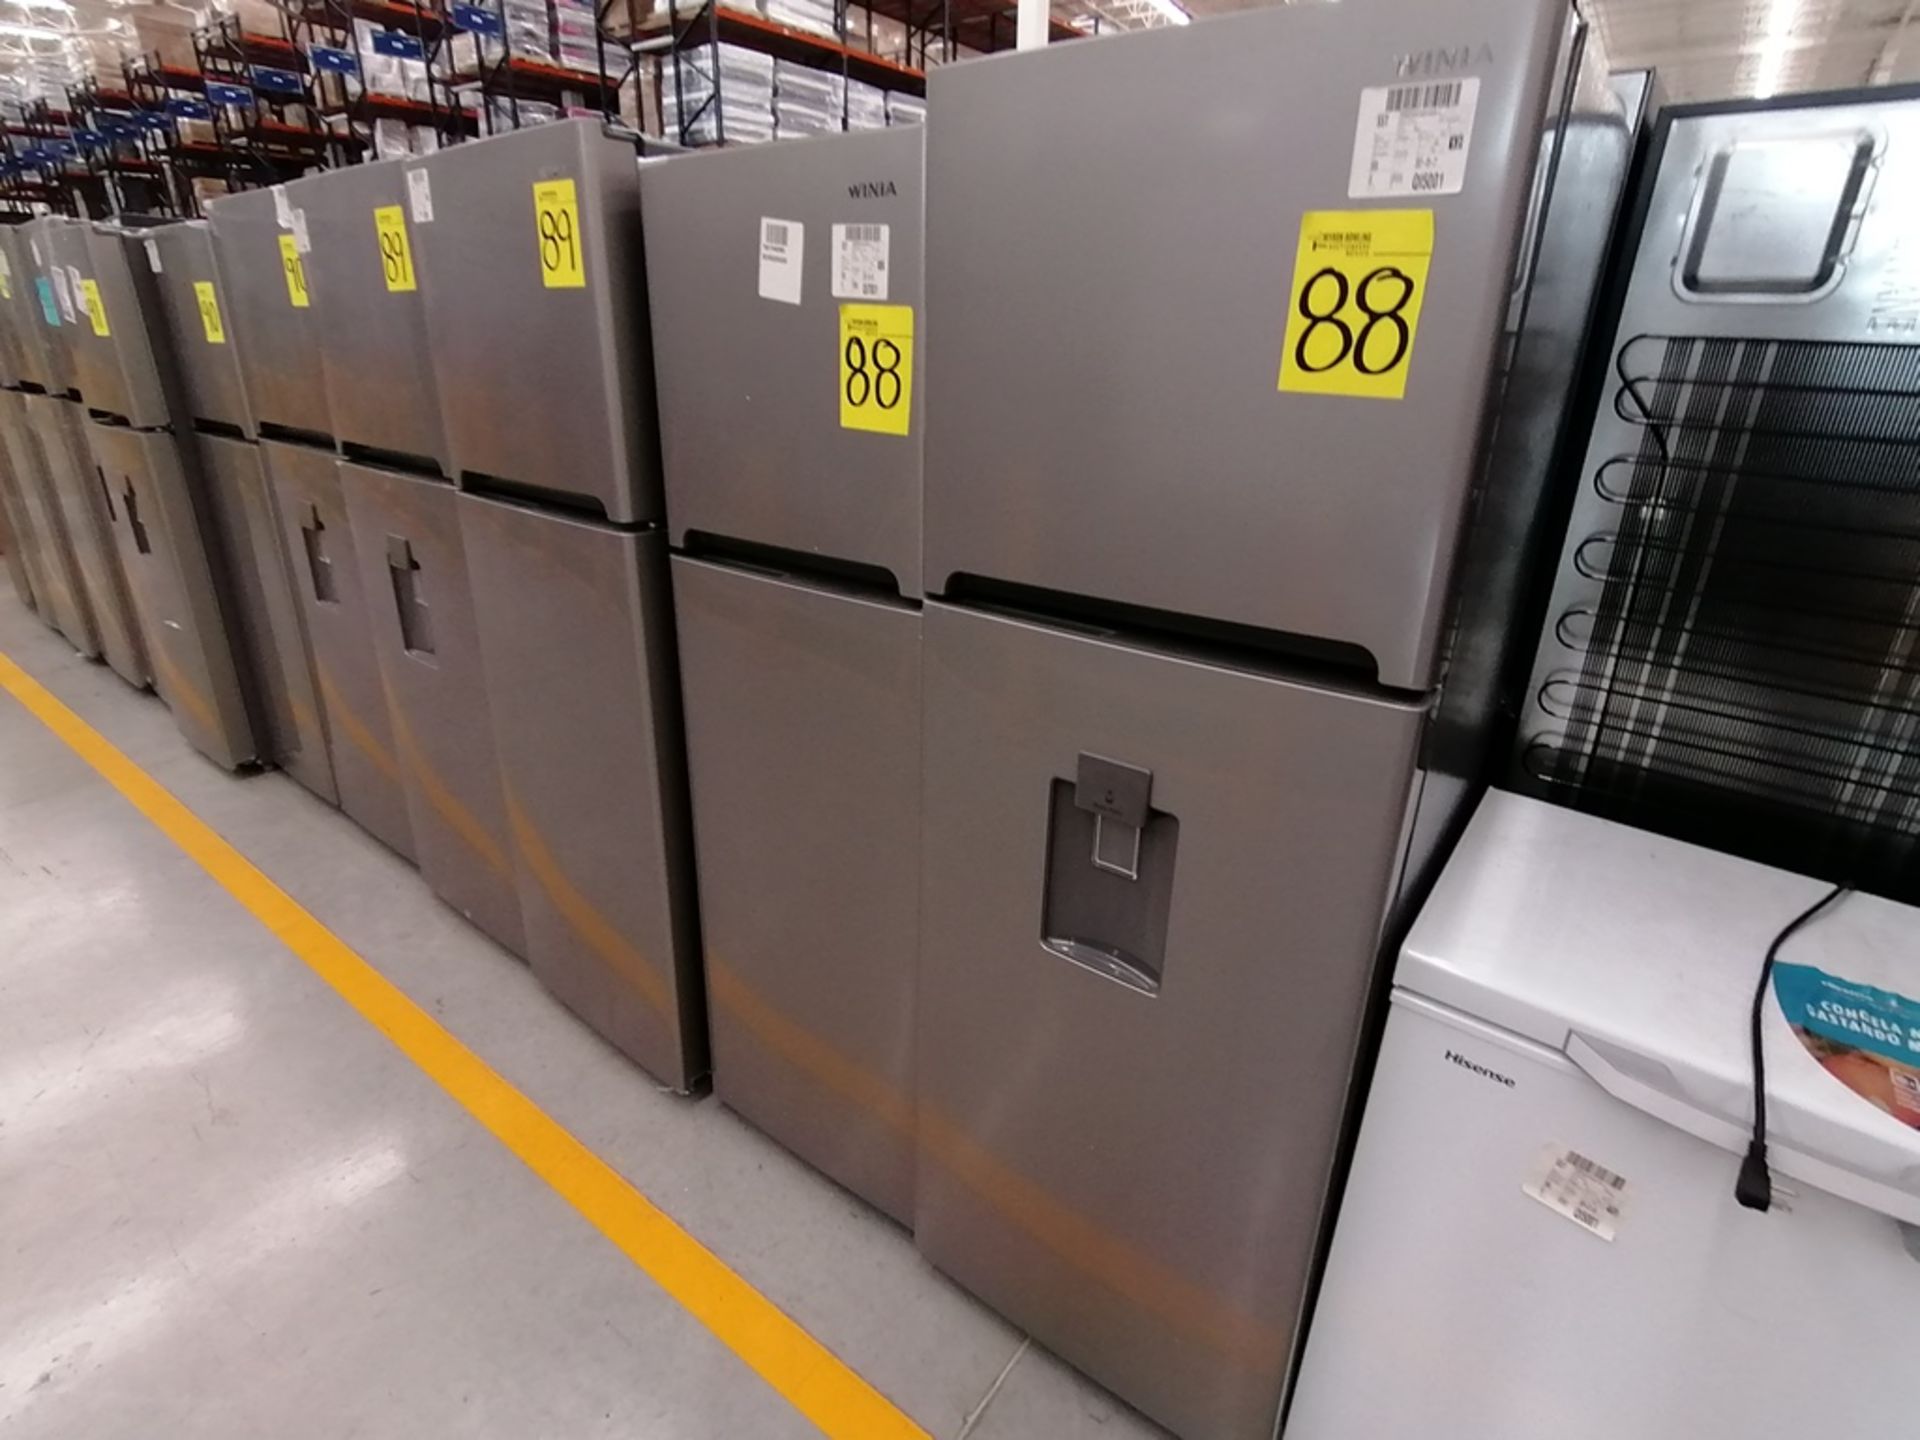 Lote de 2 refrigeradores incluye: 1 Refrigerador, Marca Winia, Modelo DFR25210GN, Serie MR219N11602 - Image 8 of 15